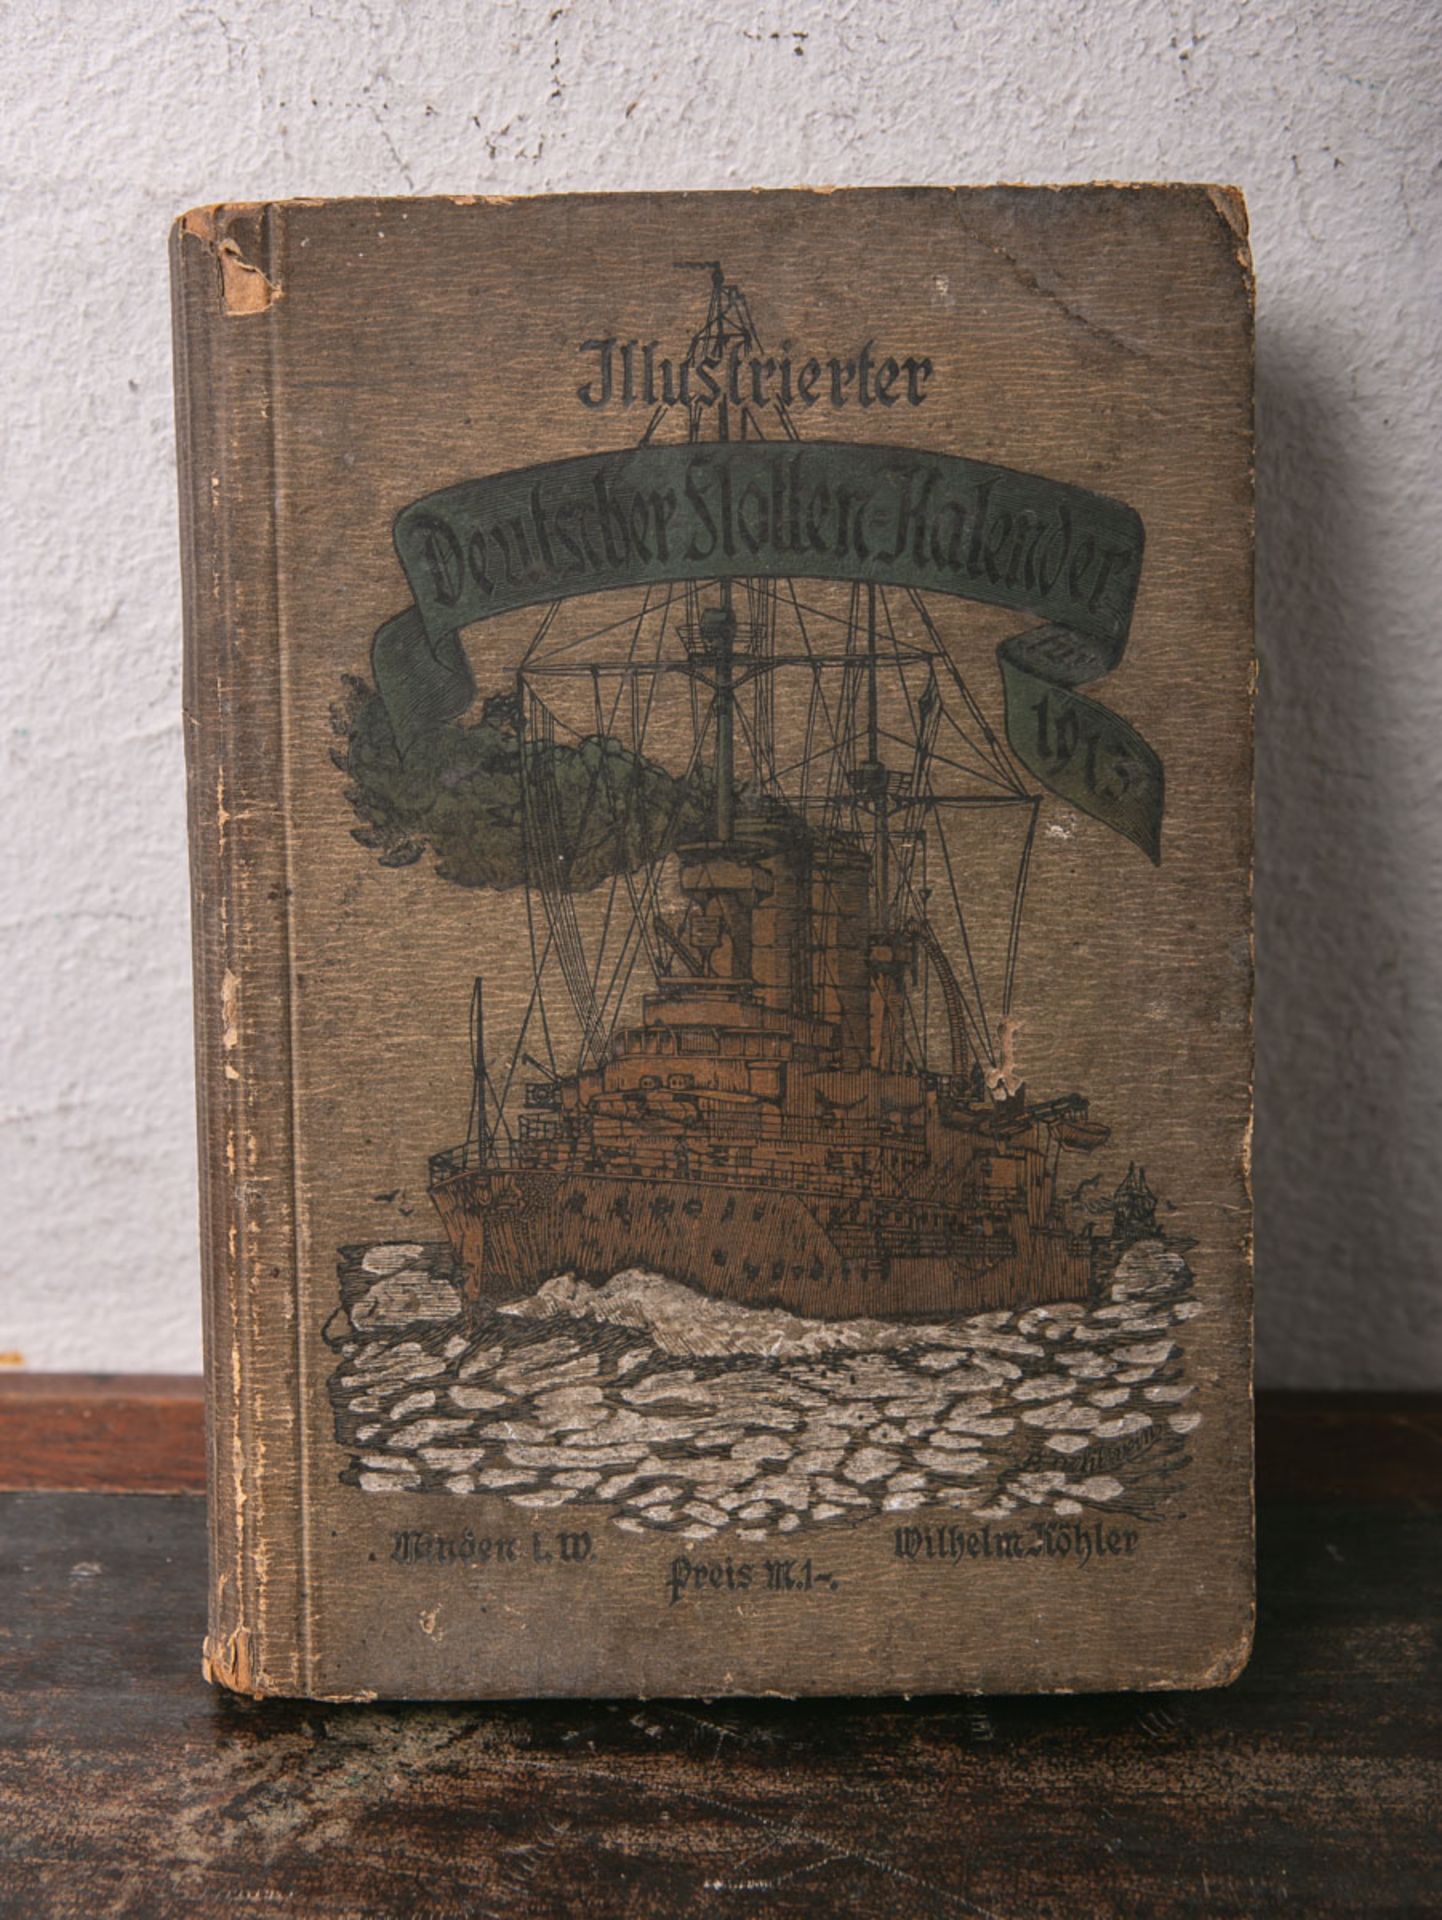 Illustrierter Deutscher Flotten-Kalender für 1913 - 13. Jahrgang